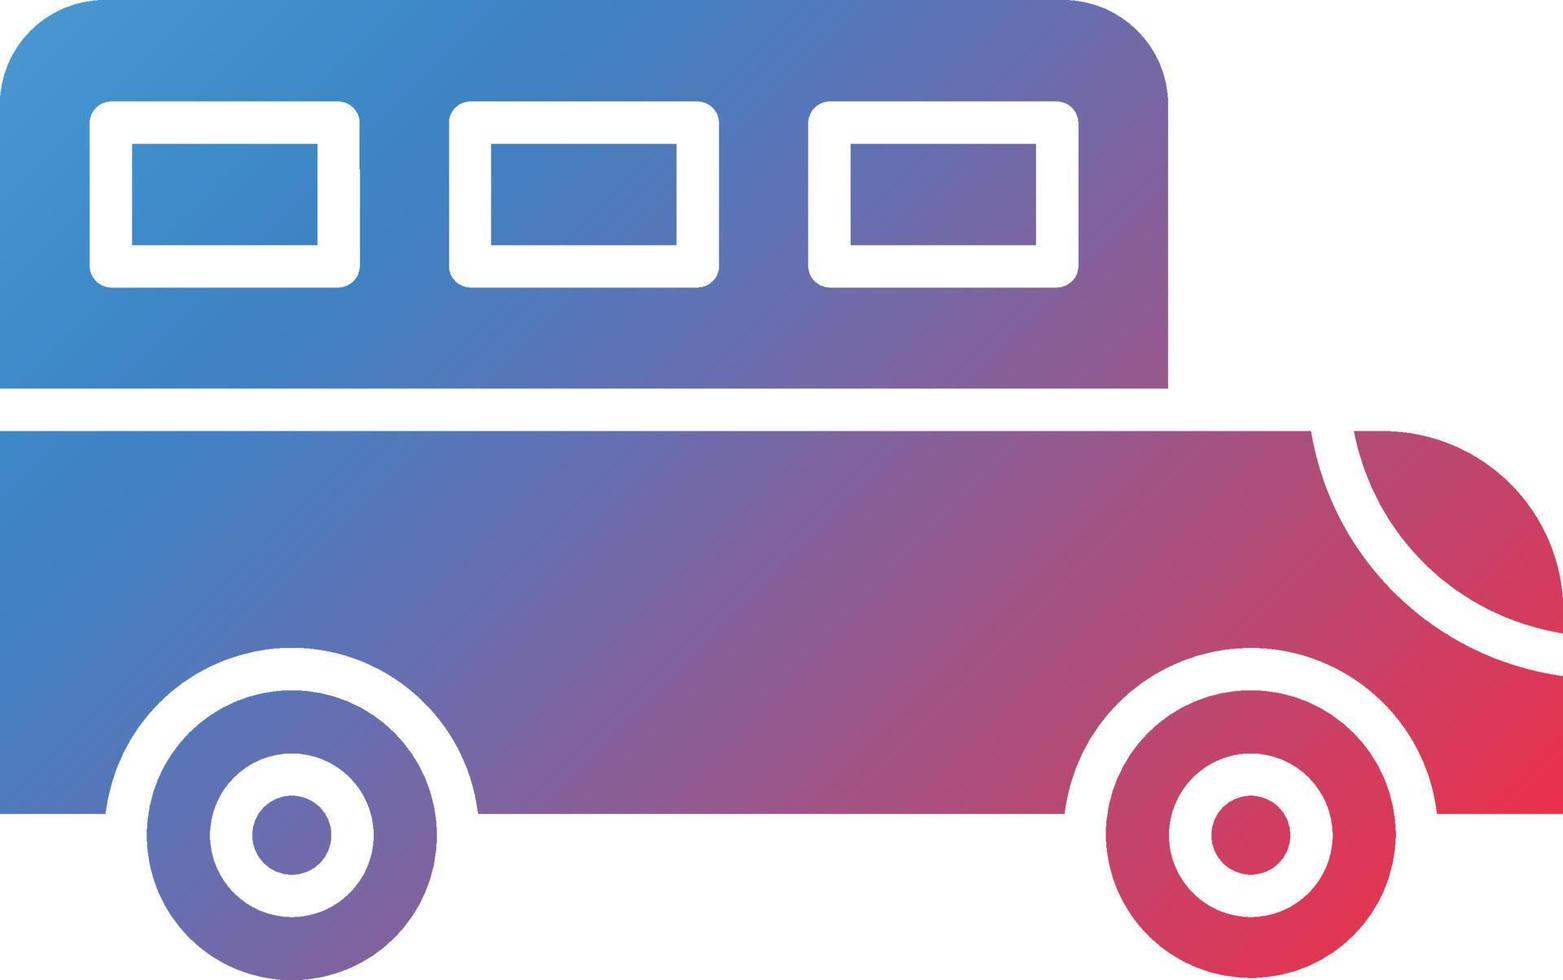 School Bus Icon Style vector